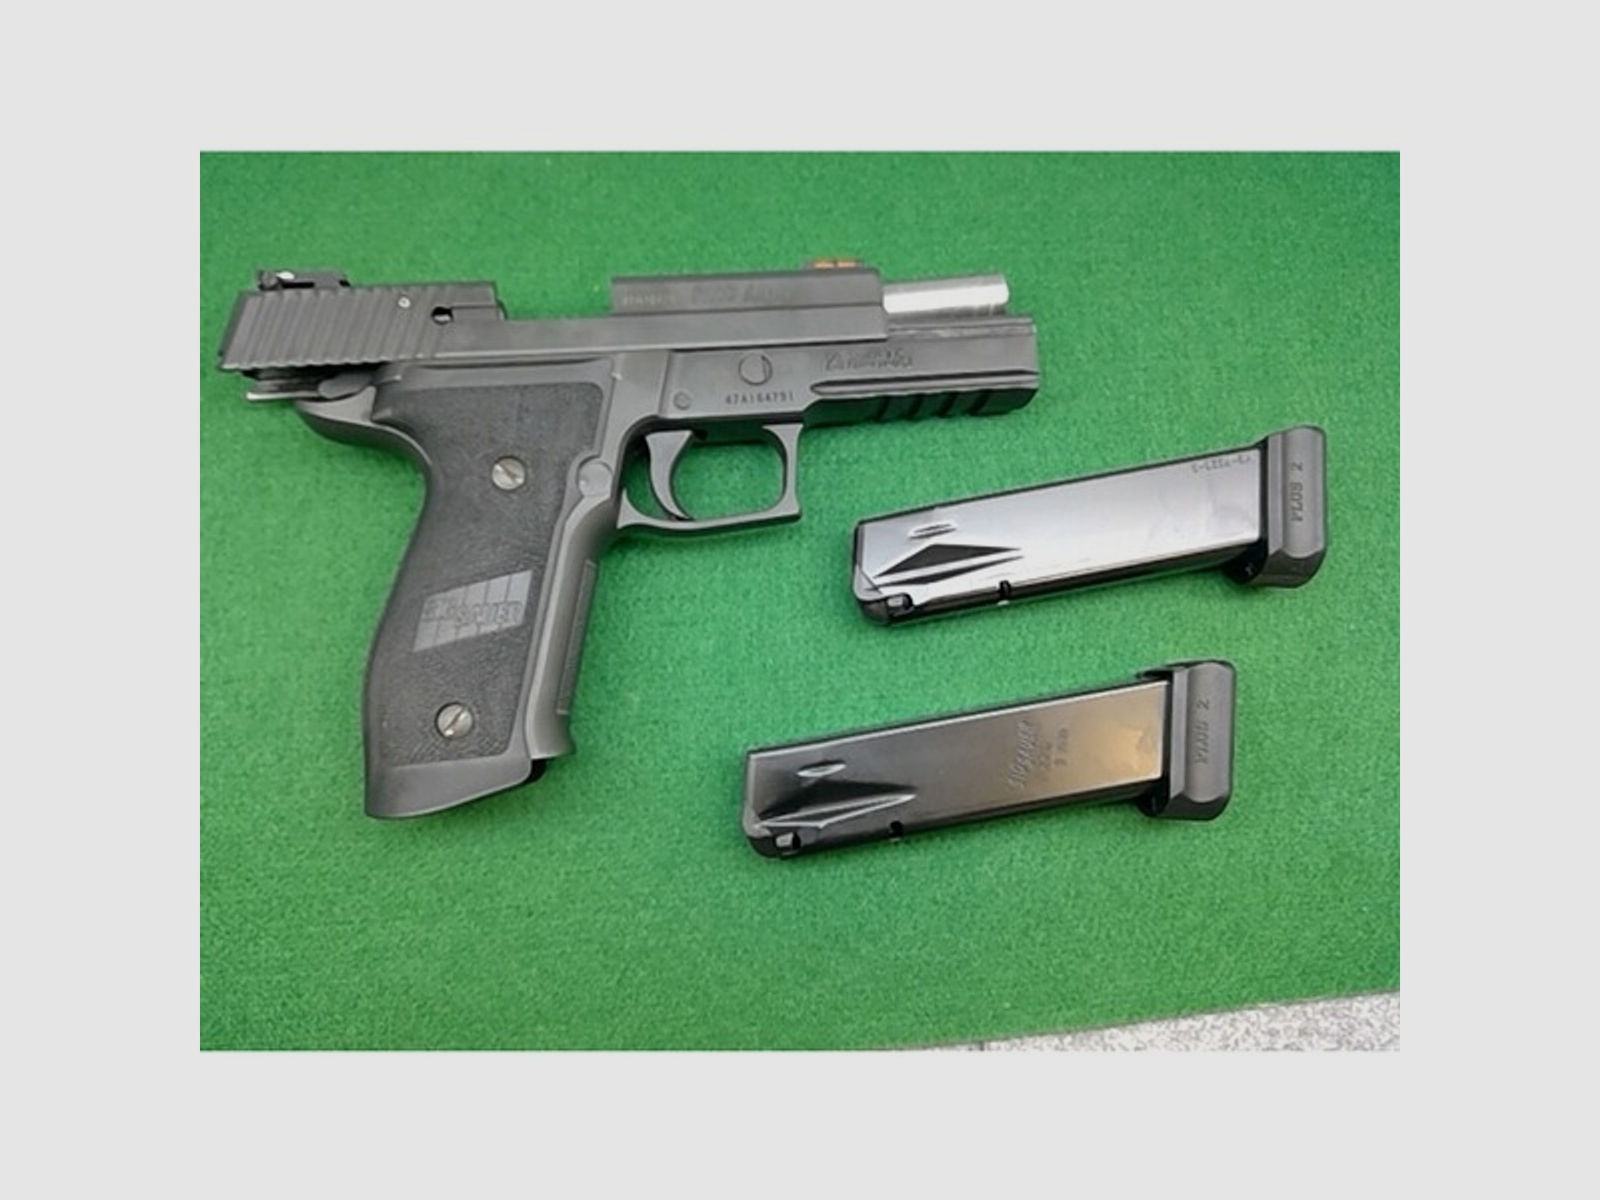 Pistole SIG Sauer P226 LDC II im Kaliber 9mm Luger gebraucht